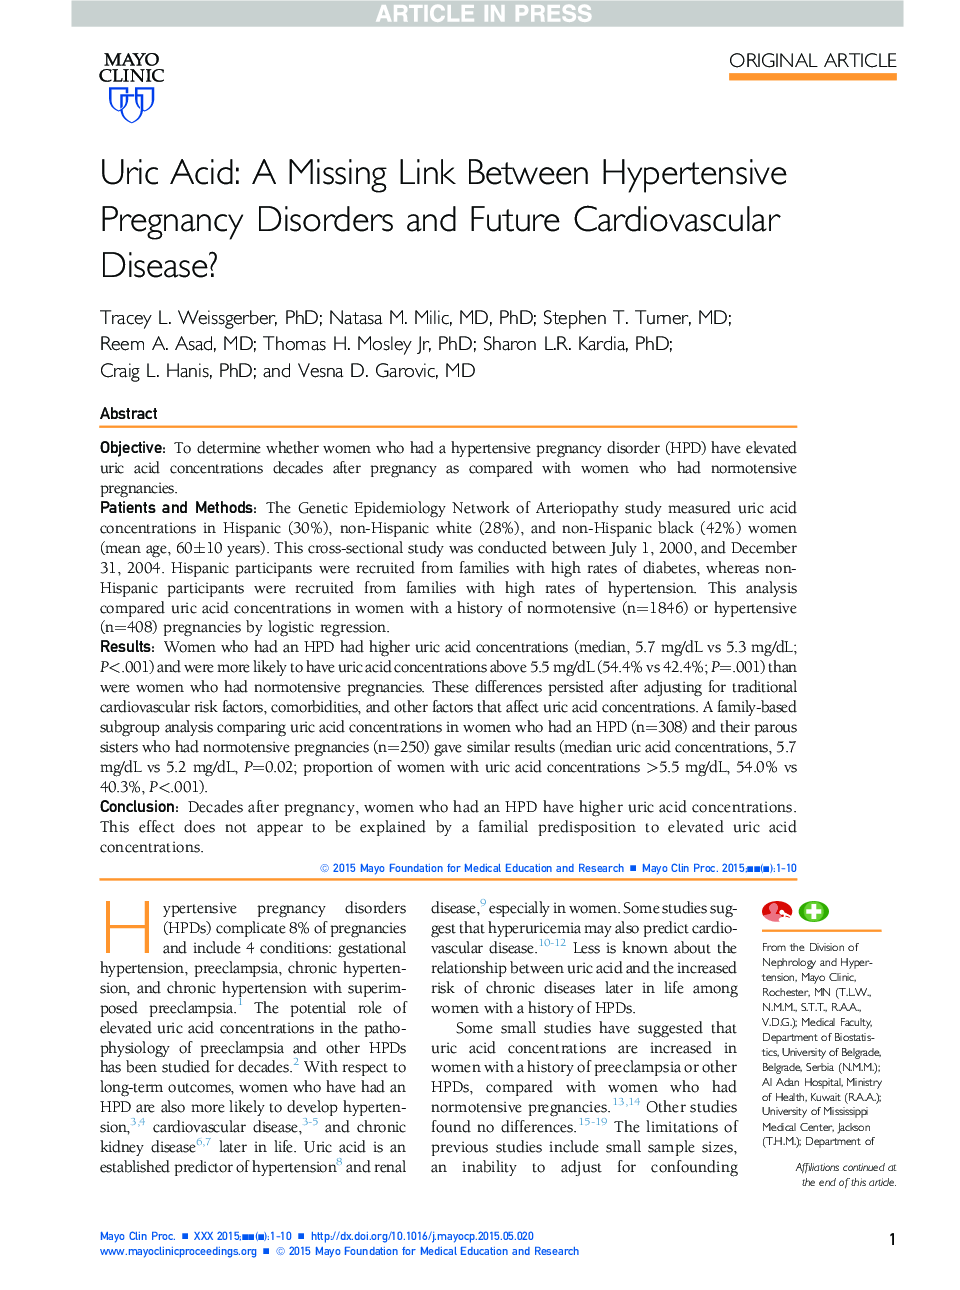 اسید اوریک: ارتباط نامشخص بین اختلالات بارداری با فشار خون بالا و بیماری قلبی عروقی آینده؟ 